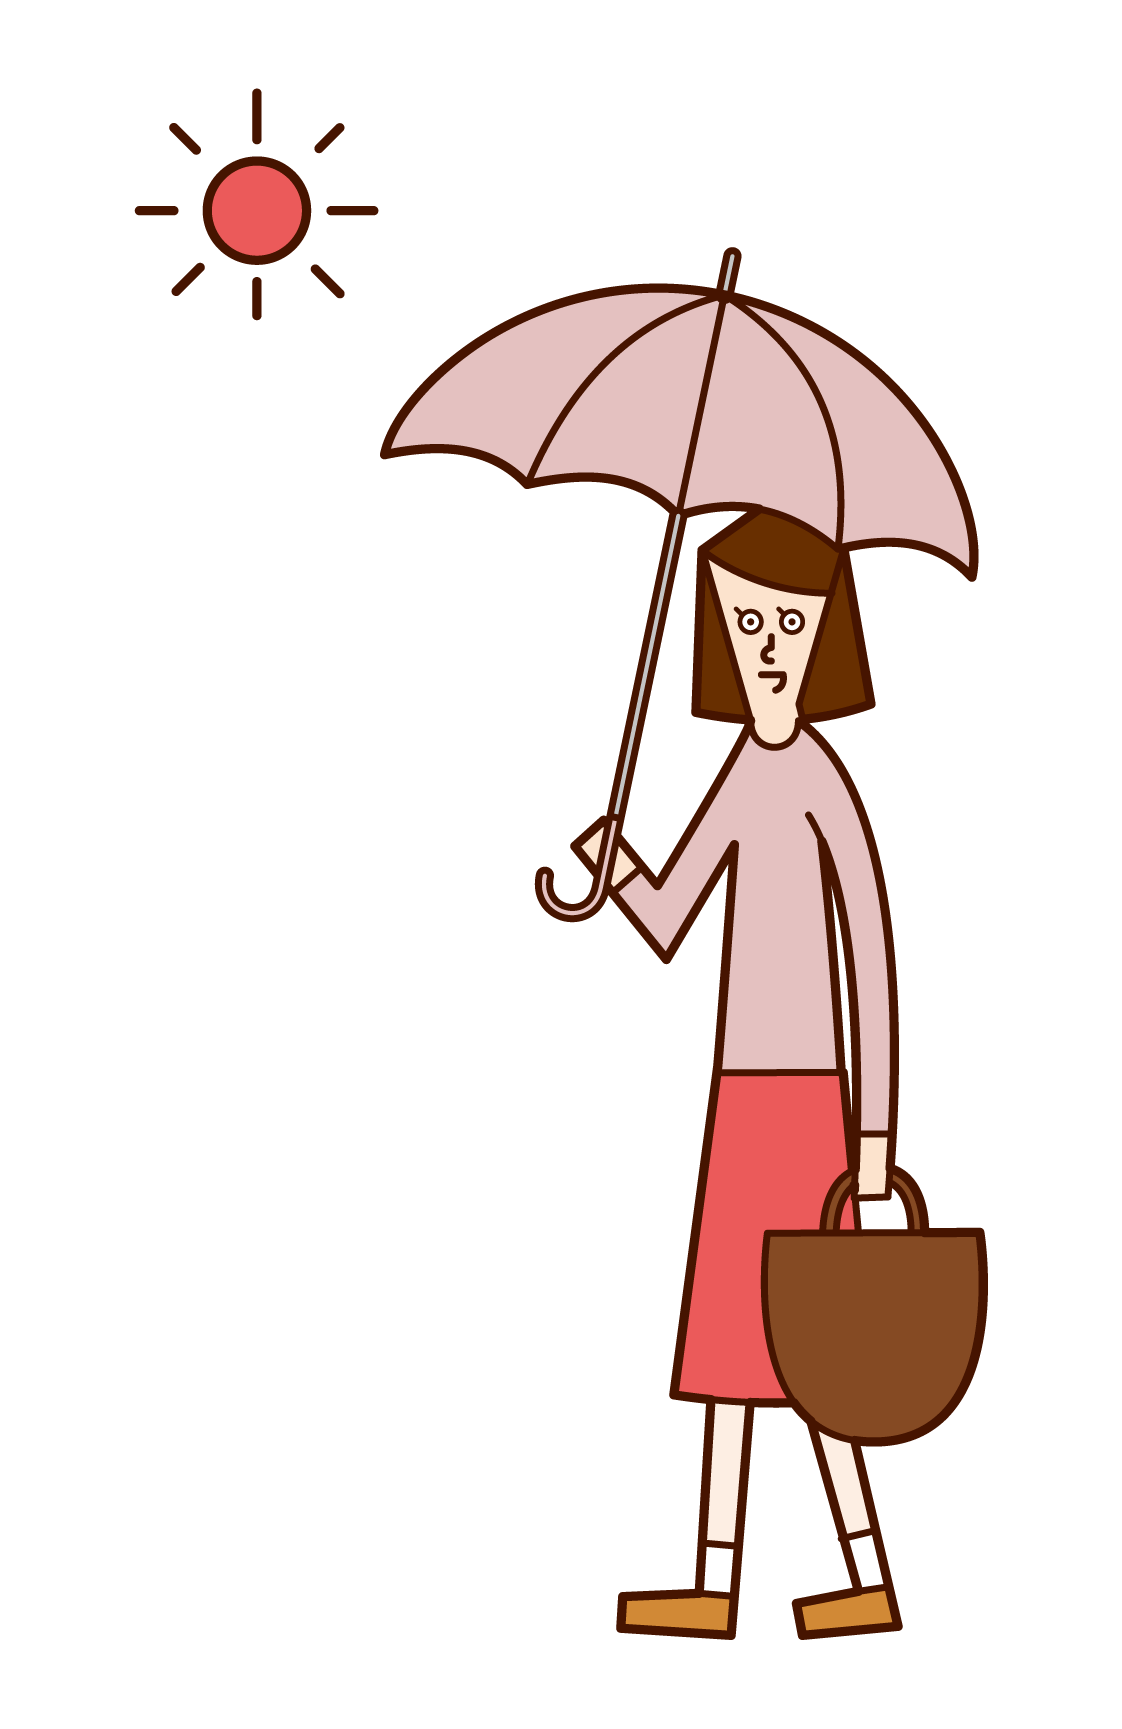 日傘をさして歩く人 女性 のイラスト フリーイラスト素材 Kukukeke ククケケ